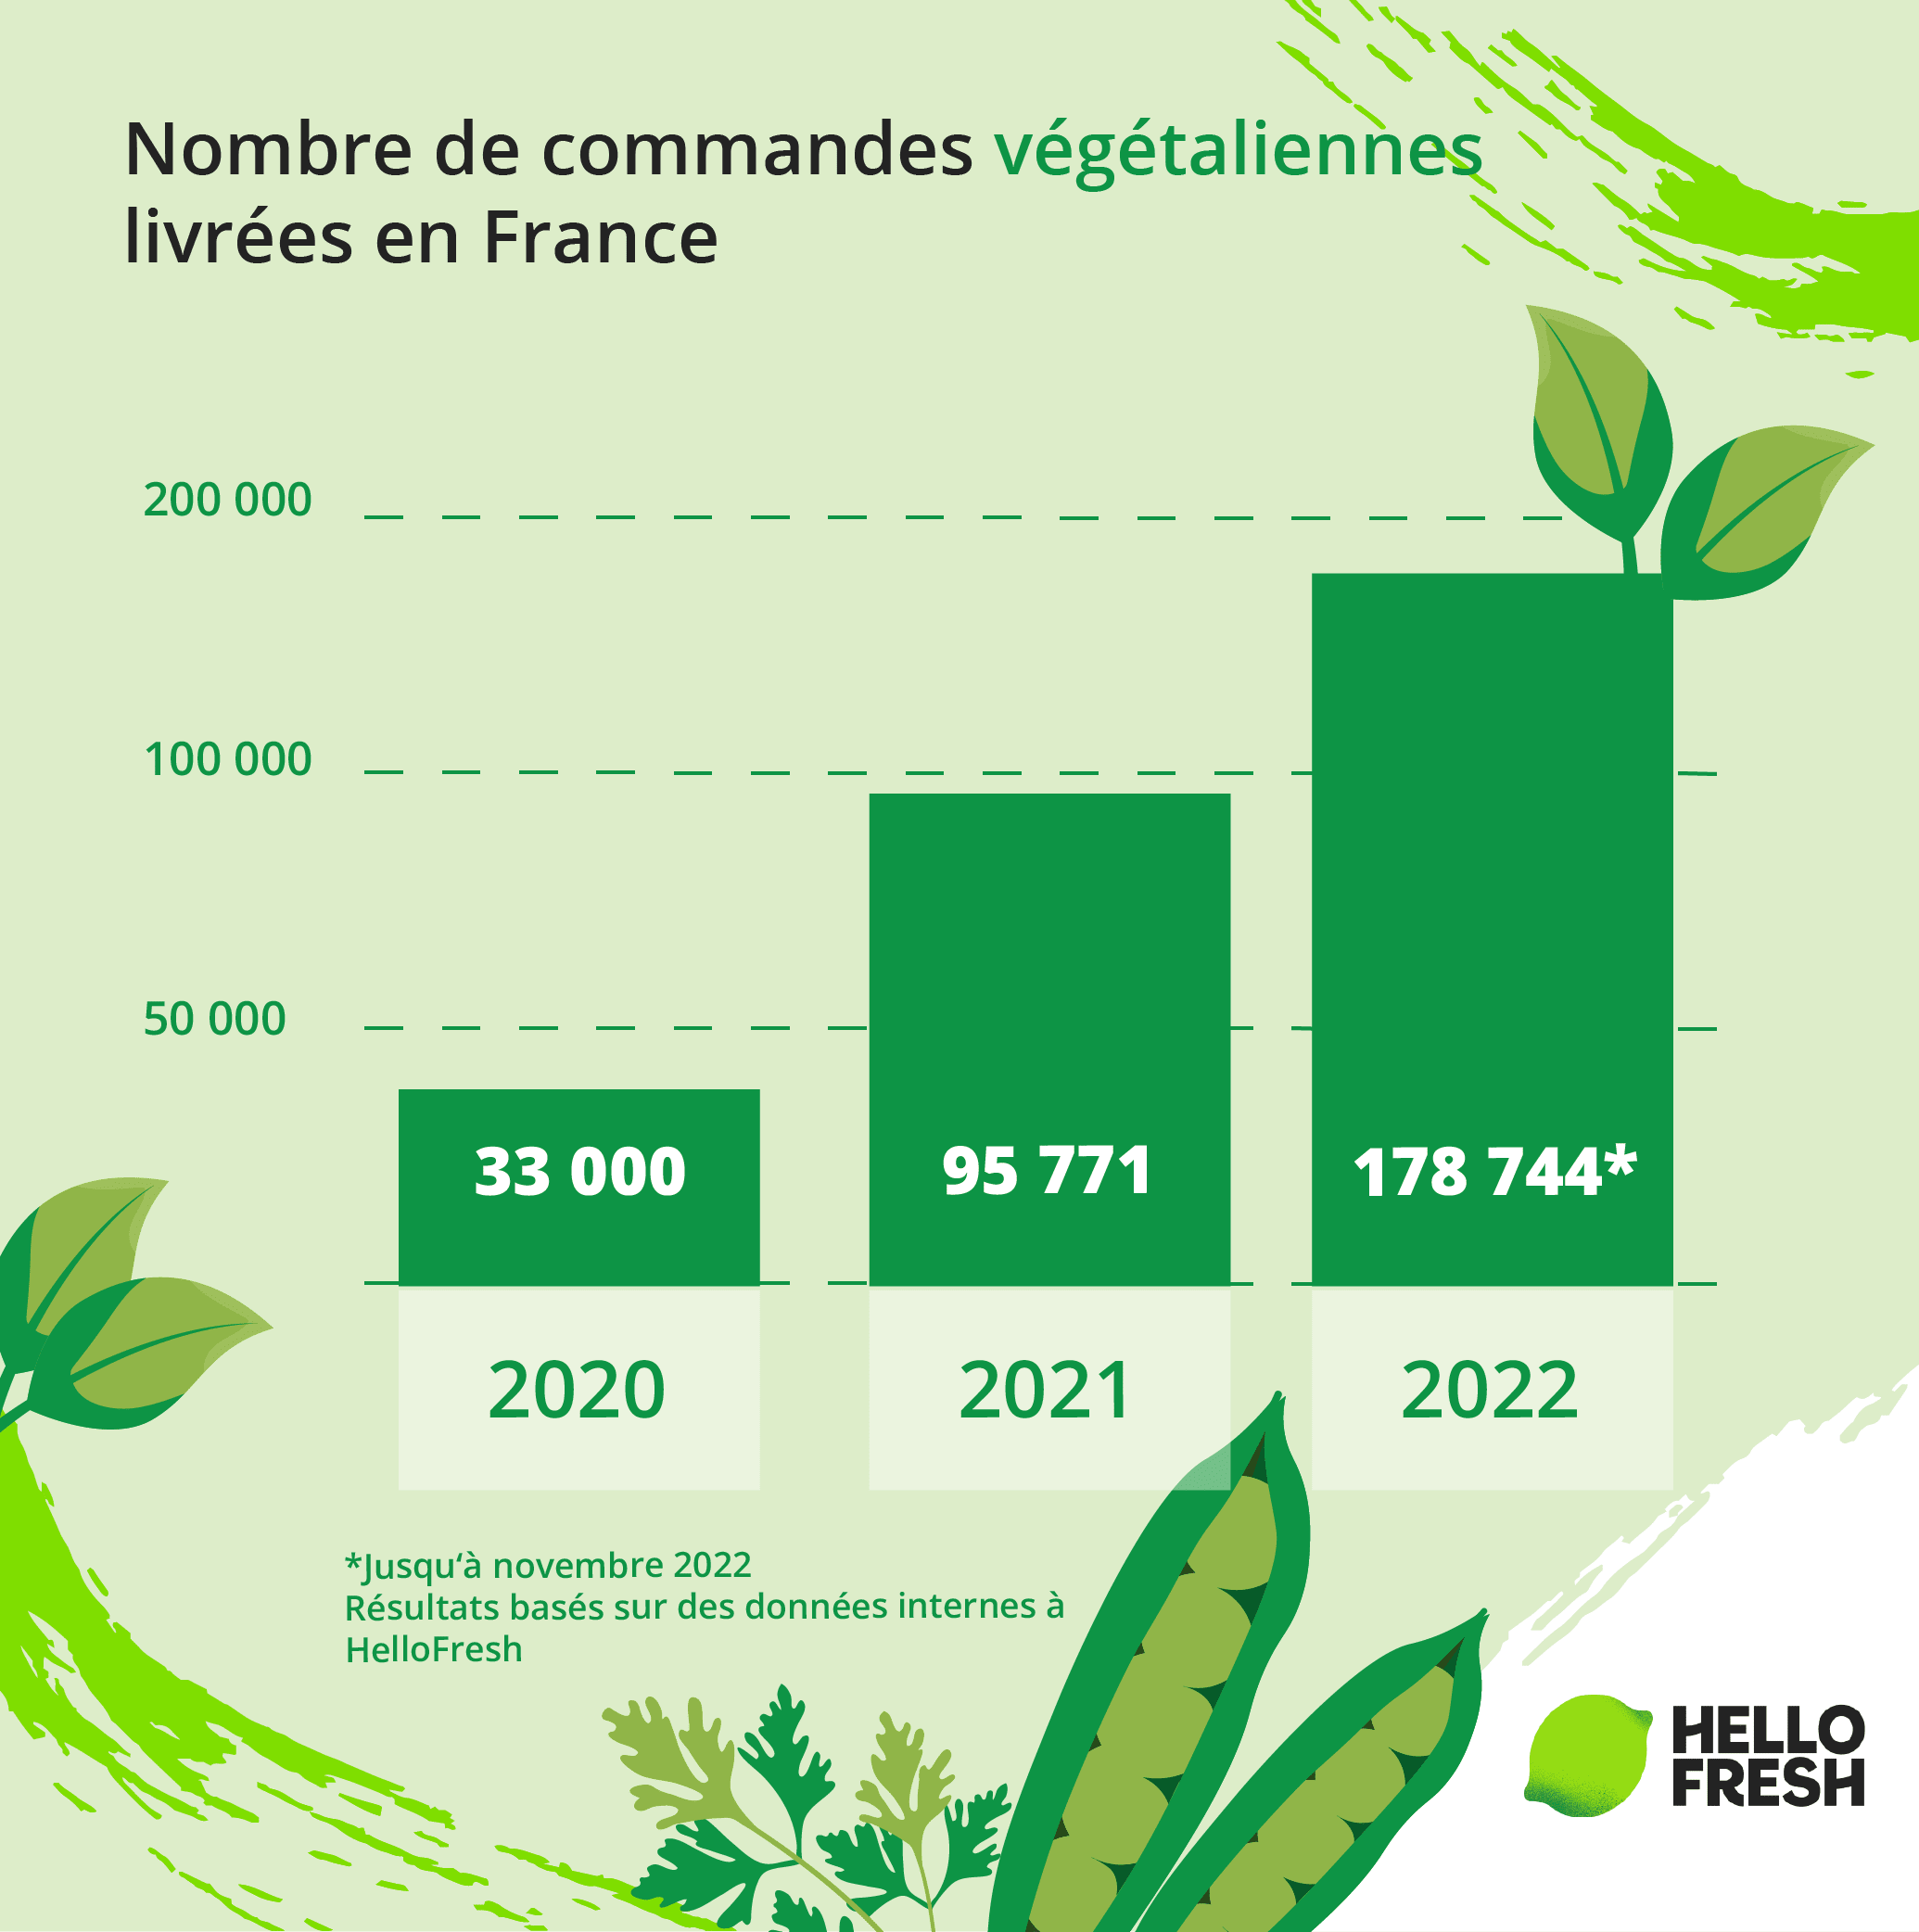 <h2>Combien de Box repas végétaliennes ont été envoyées en France entre 2020 et 2022 ?</h2>